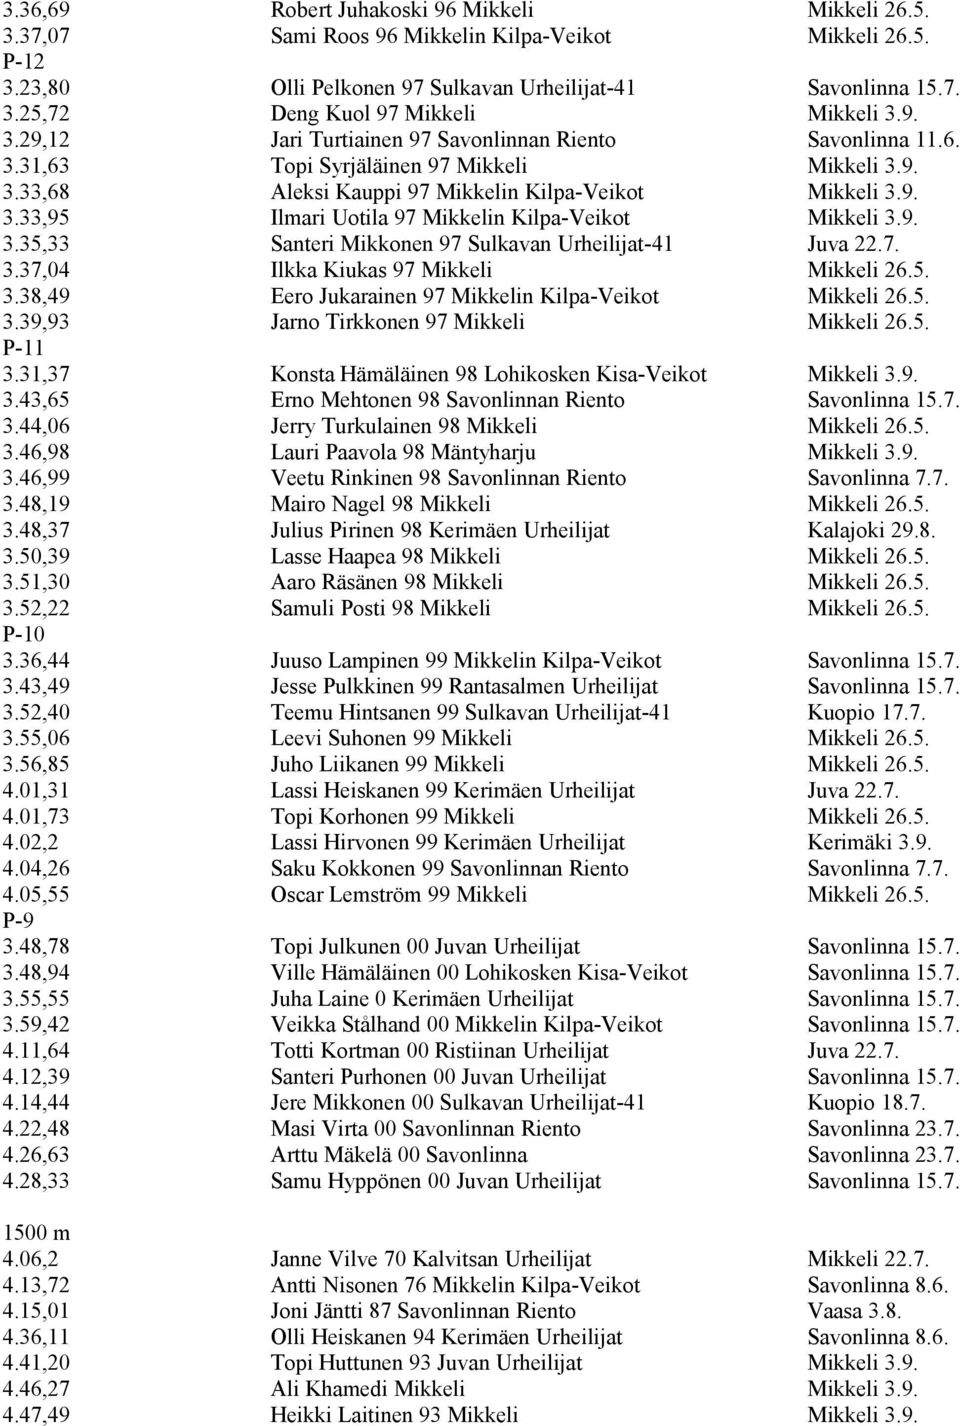 9. 3.35,33 Santeri Mikkonen 97 Sulkavan Urheilijat-41 Juva 22.7. 3.37,04 Ilkka Kiukas 97 Mikkeli Mikkeli 26.5. 3.38,49 Eero Jukarainen 97 Mikkelin Kilpa-Veikot Mikkeli 26.5. 3.39,93 Jarno Tirkkonen 97 Mikkeli Mikkeli 26.